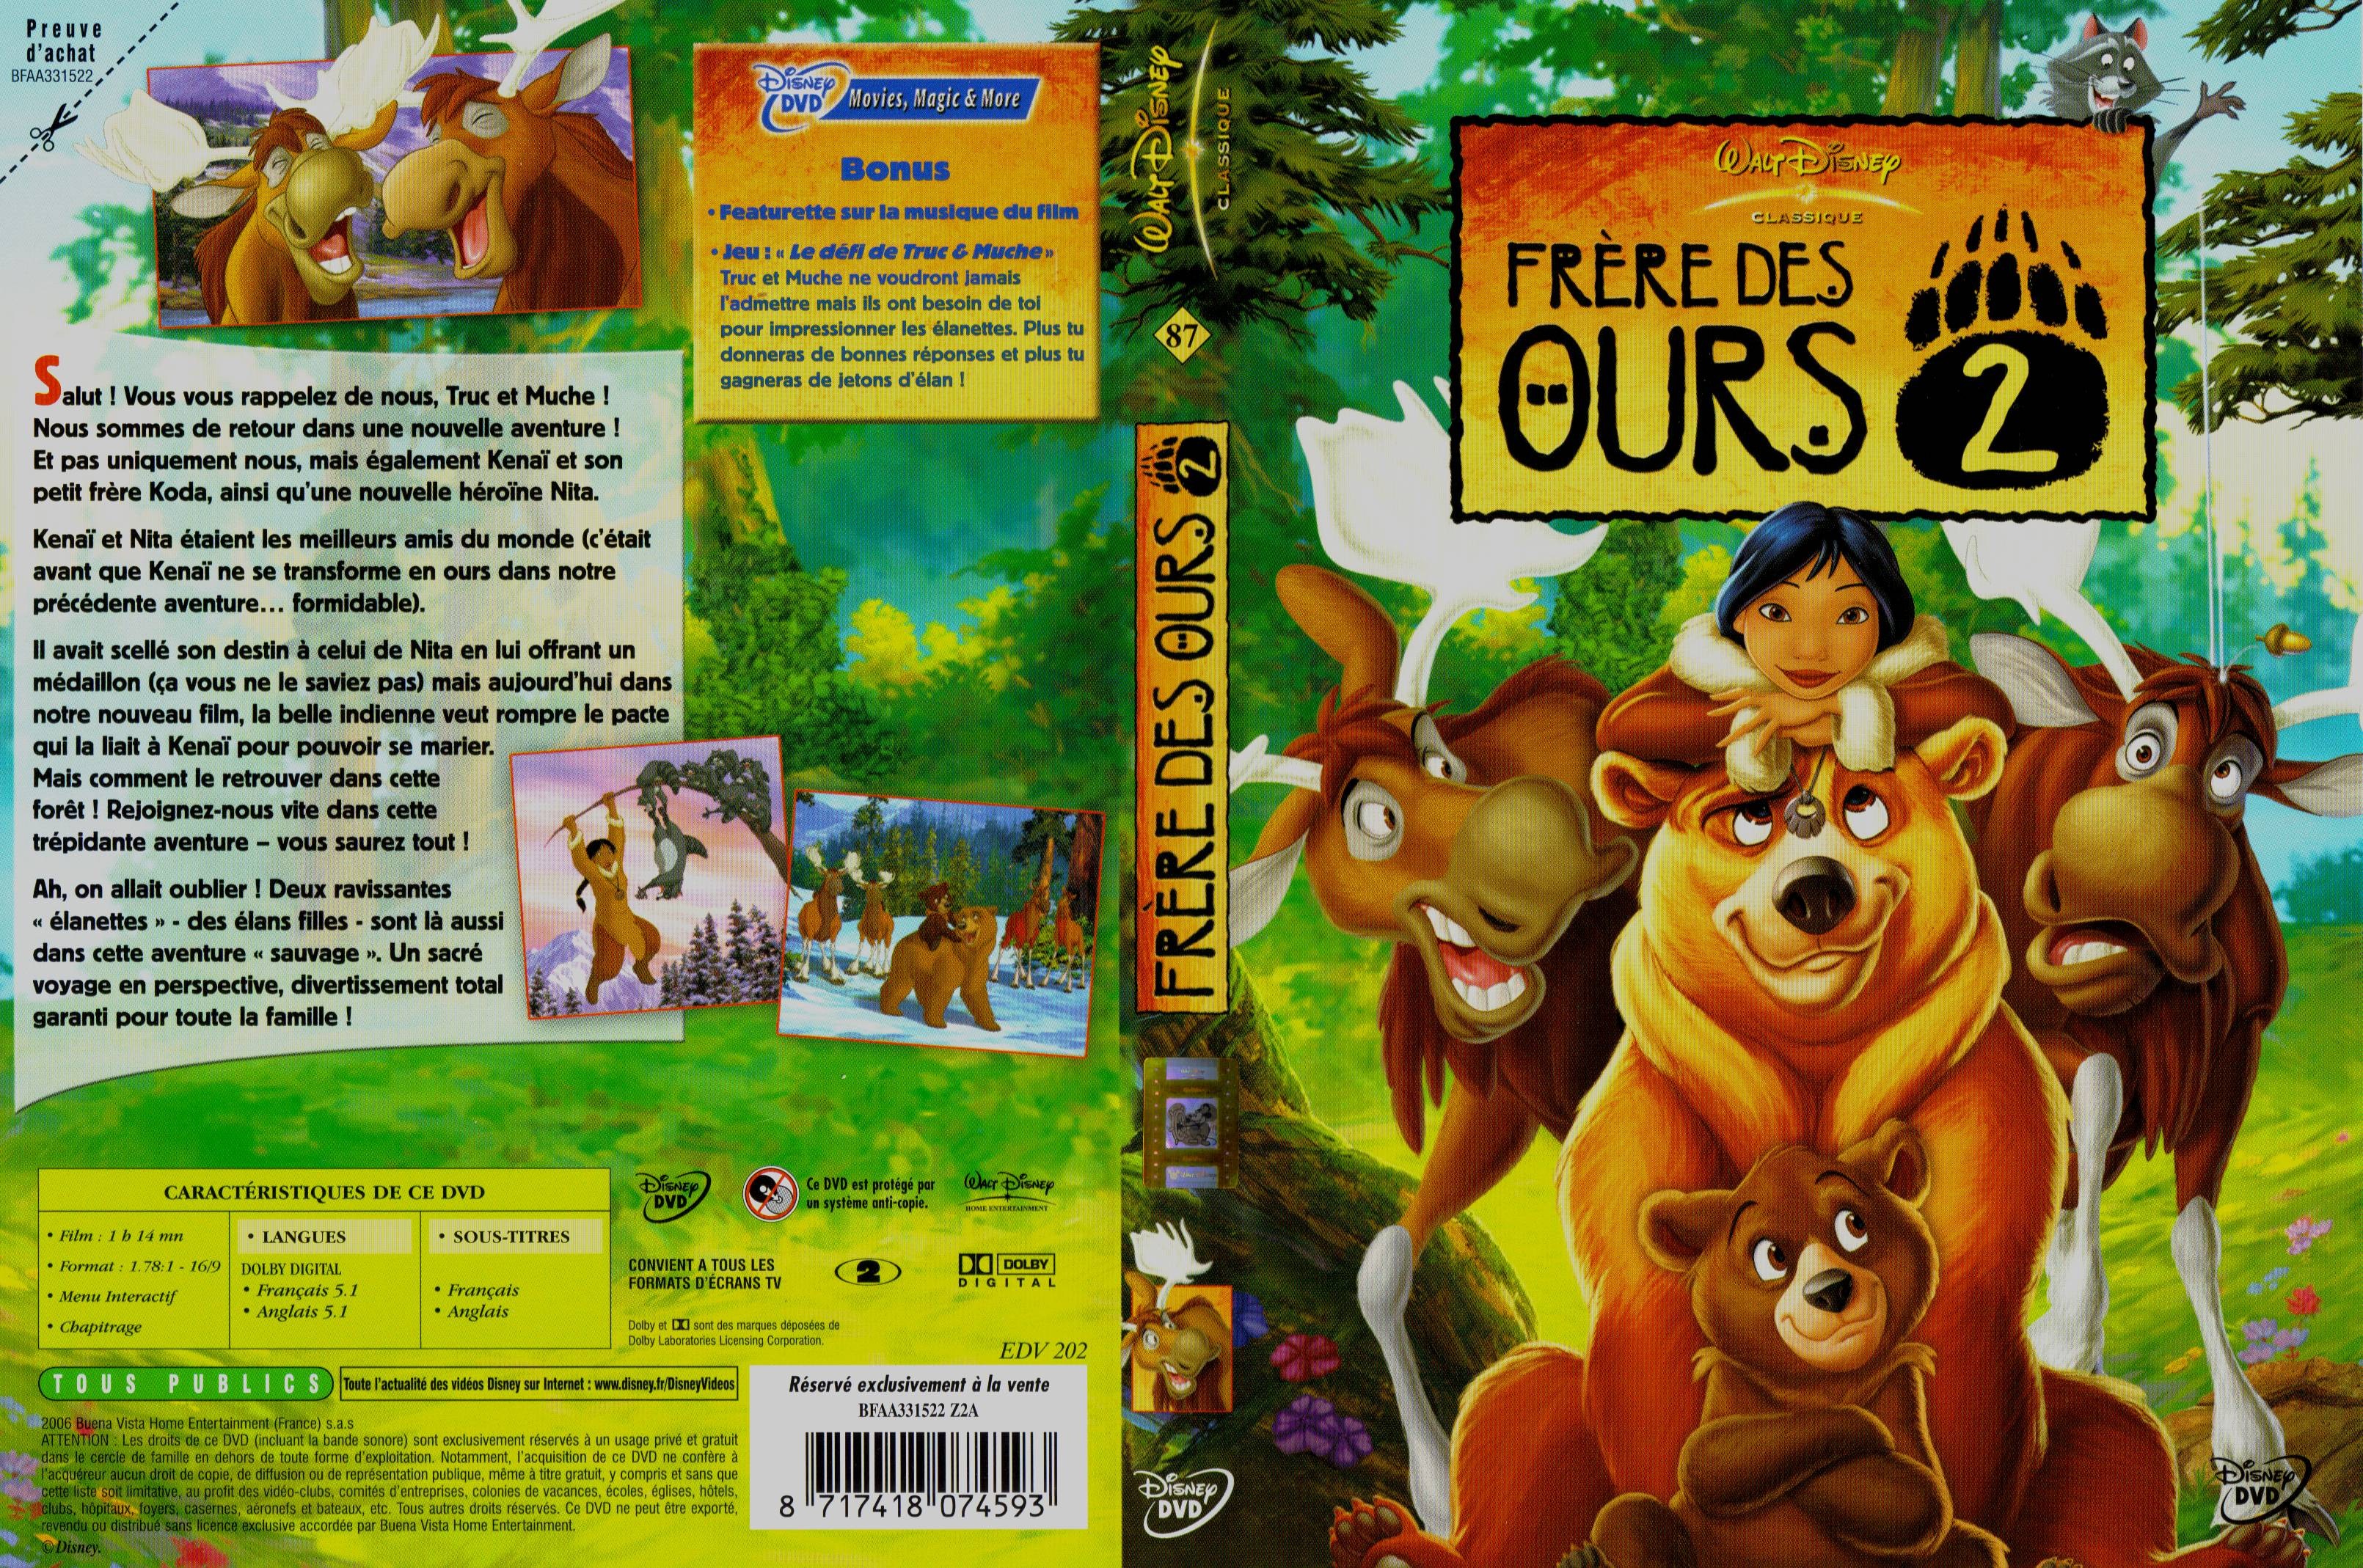 Jaquette DVD Frre des ours 2 v2